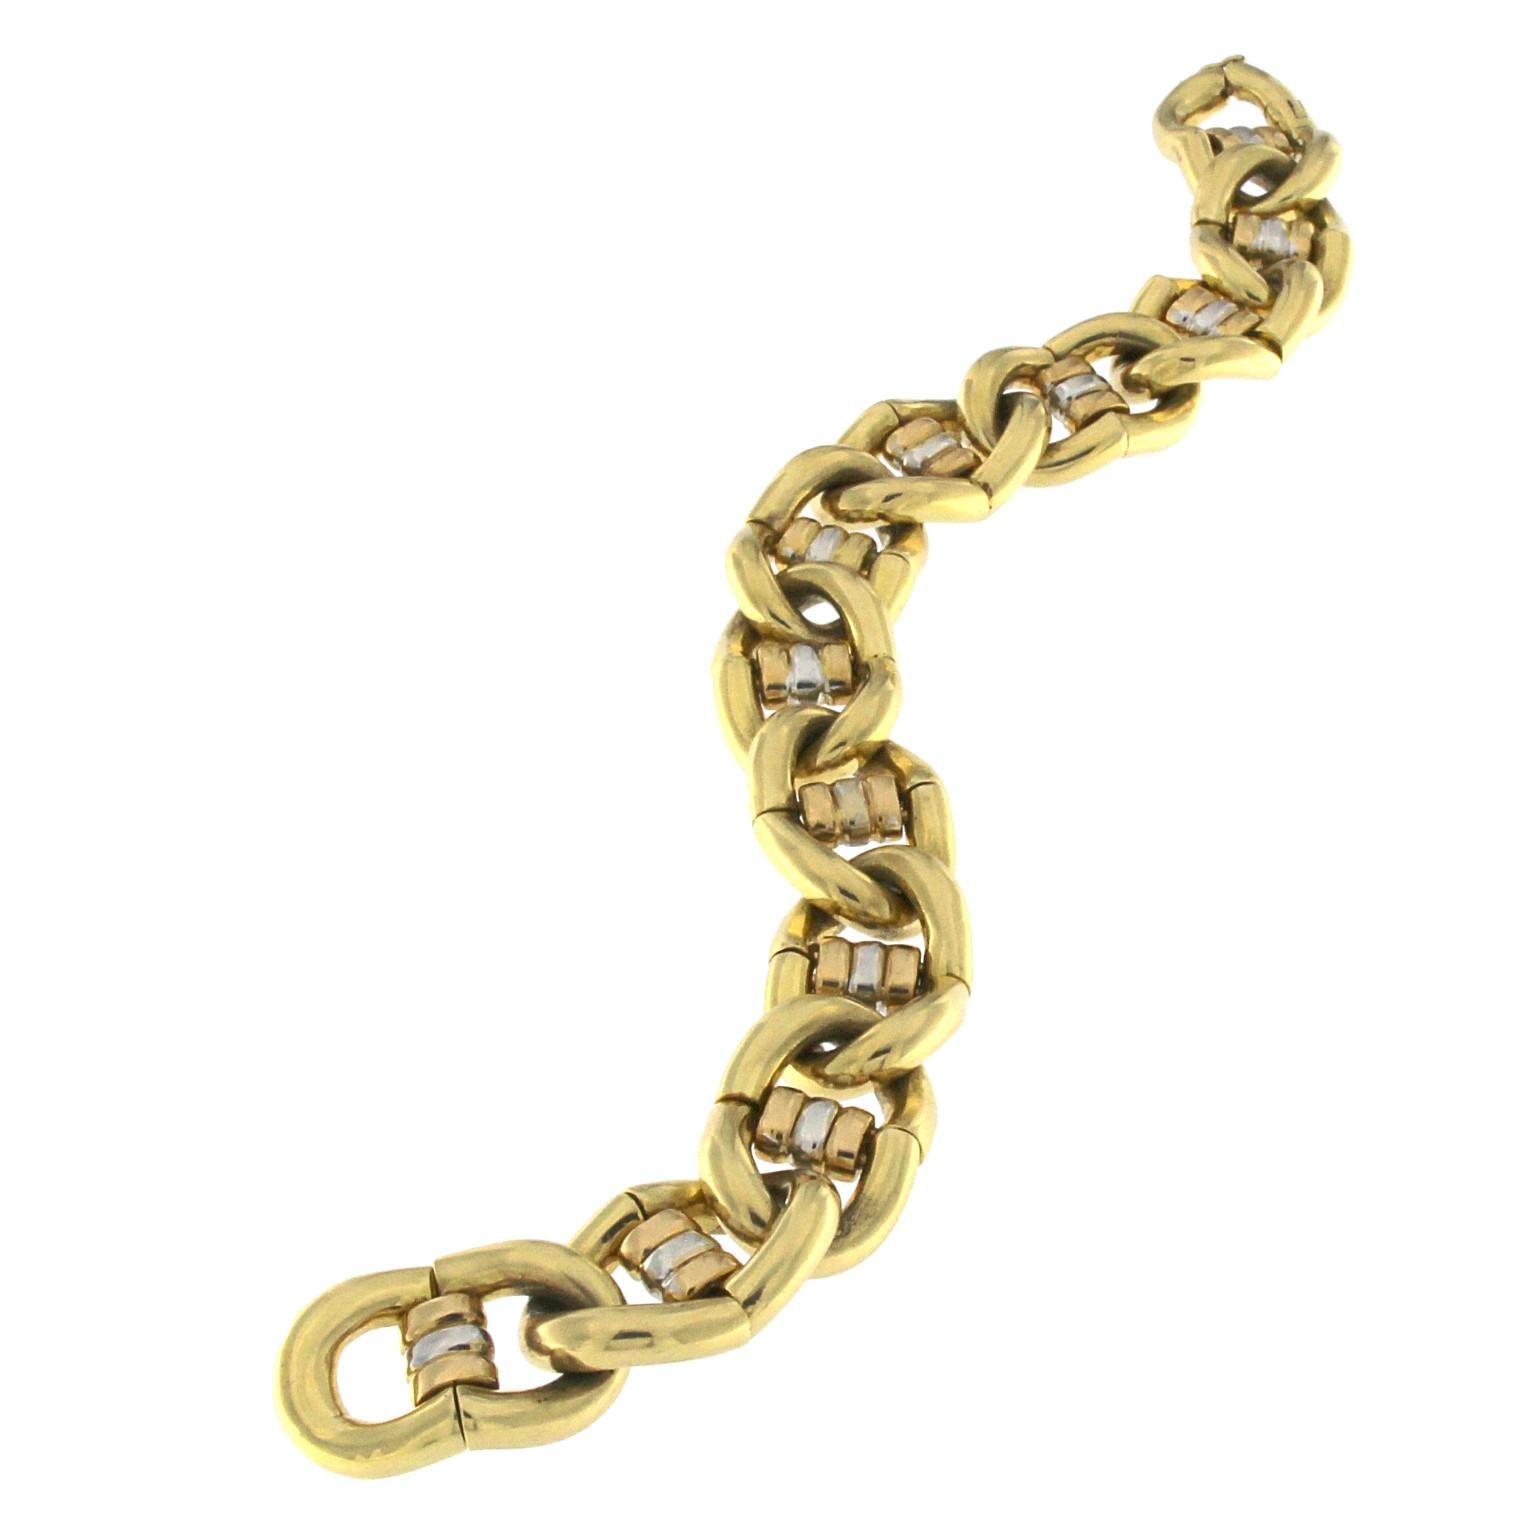 Un design inhabituel dans un style de bracelet chaîne couplé avec un grand effet visuel en or jaune avec un lien central de trois couleurs.
Poids total de  or 18 kt gr 58,60
Timbre 750

